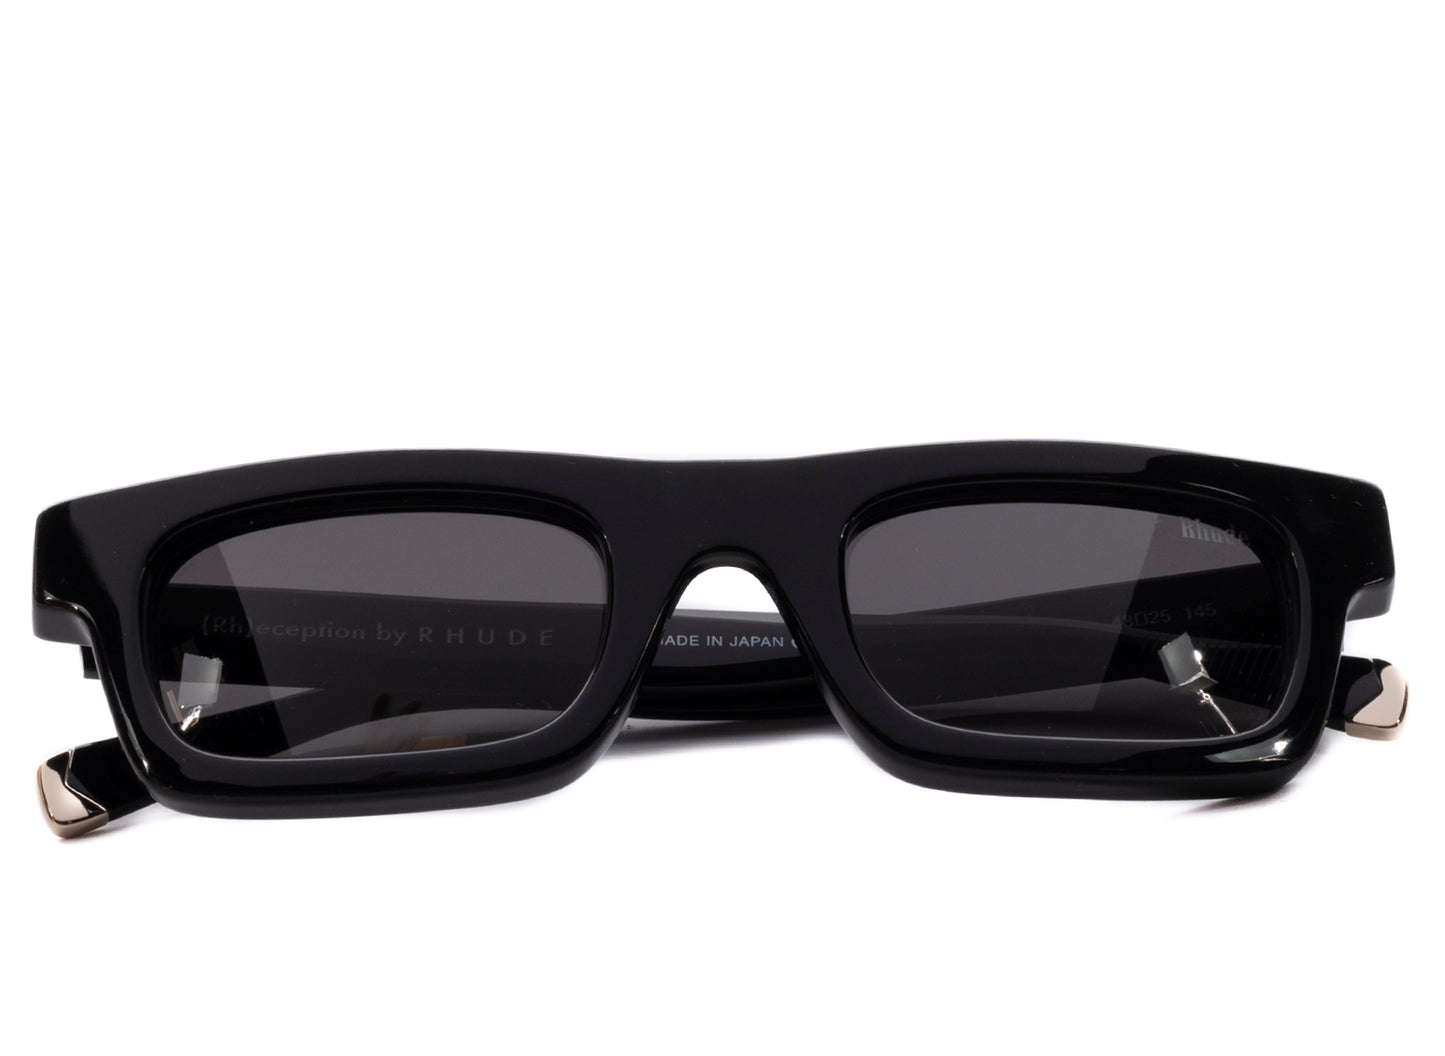 Rhude Lightning Frame Sunglasses in Black